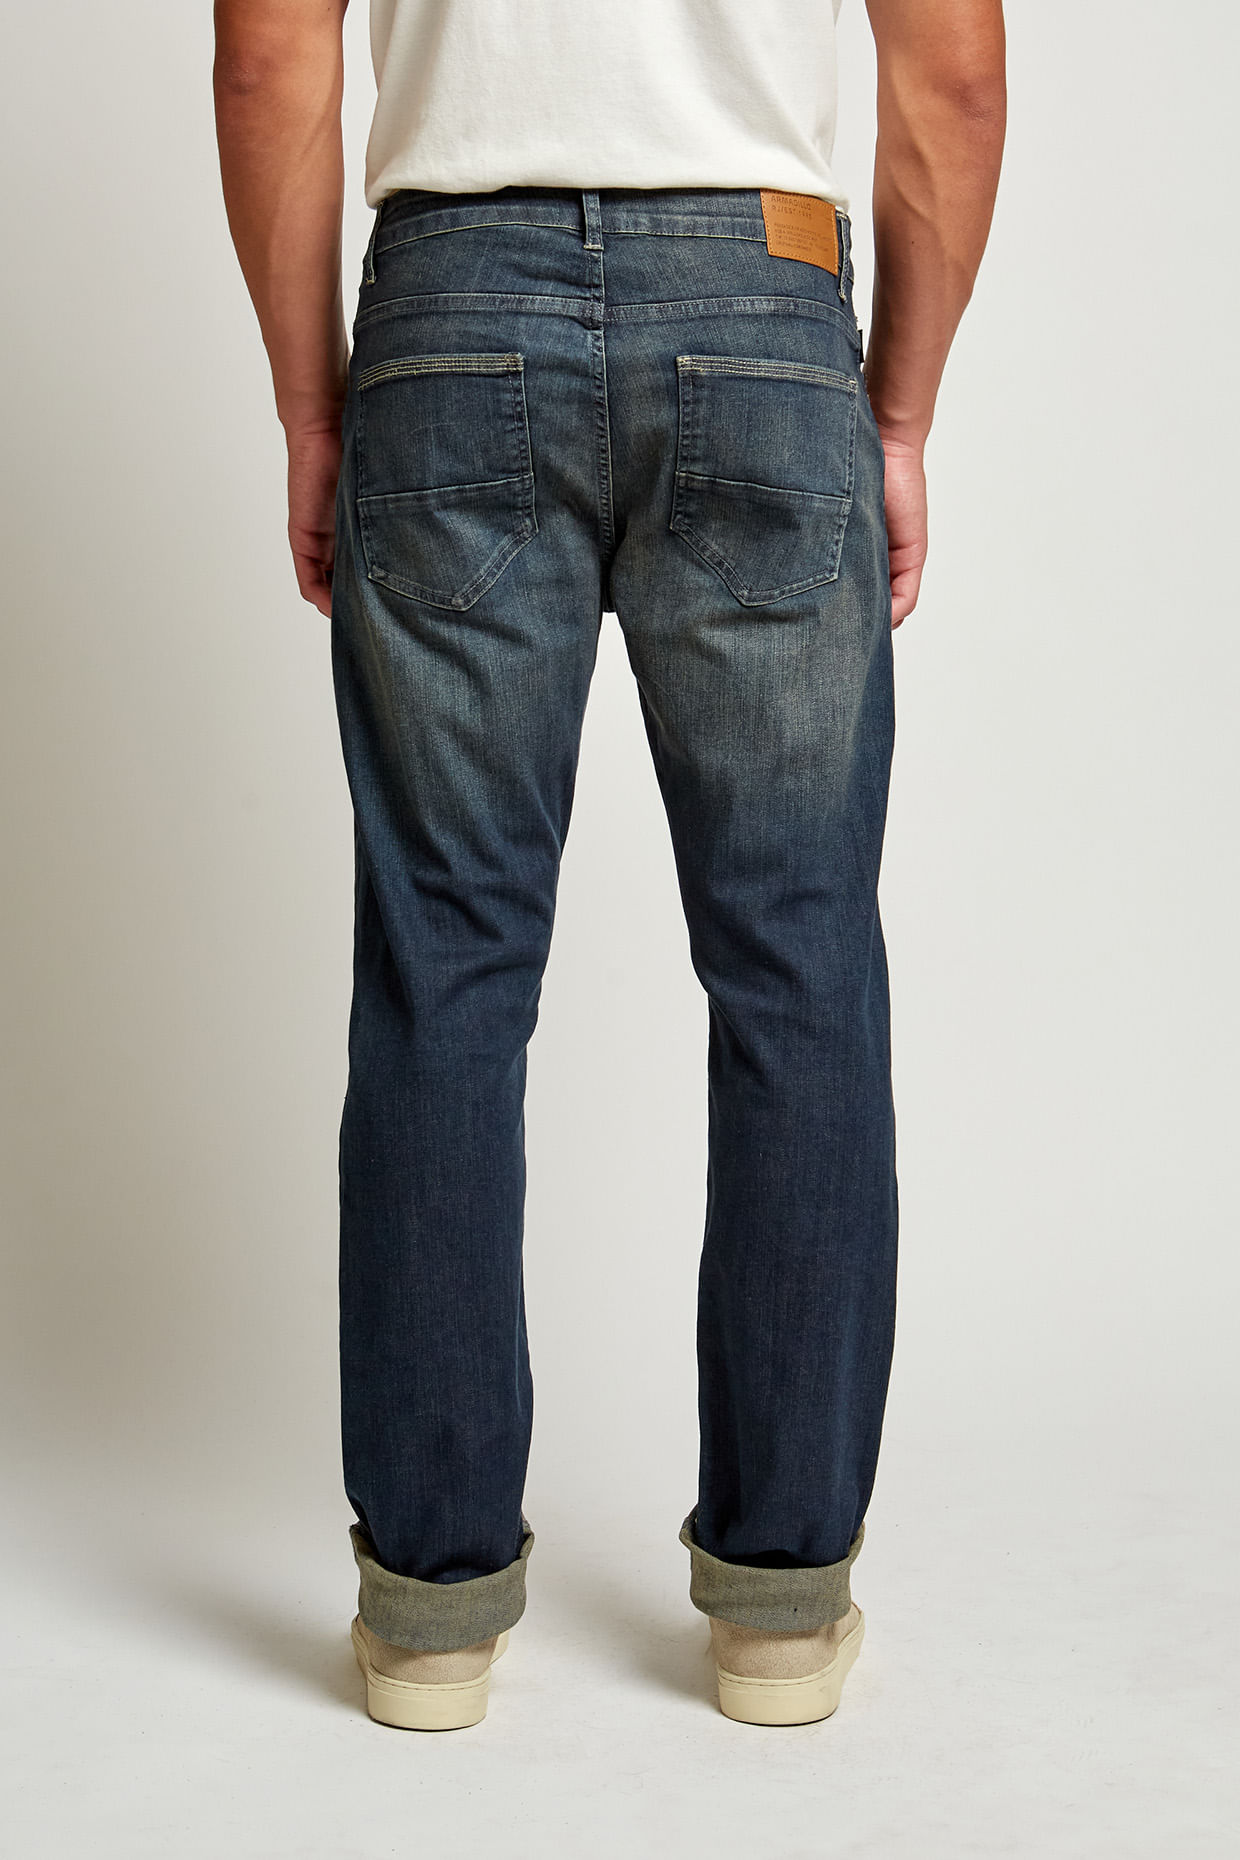 20906---Calca-Jeans-Brooklyn--4-